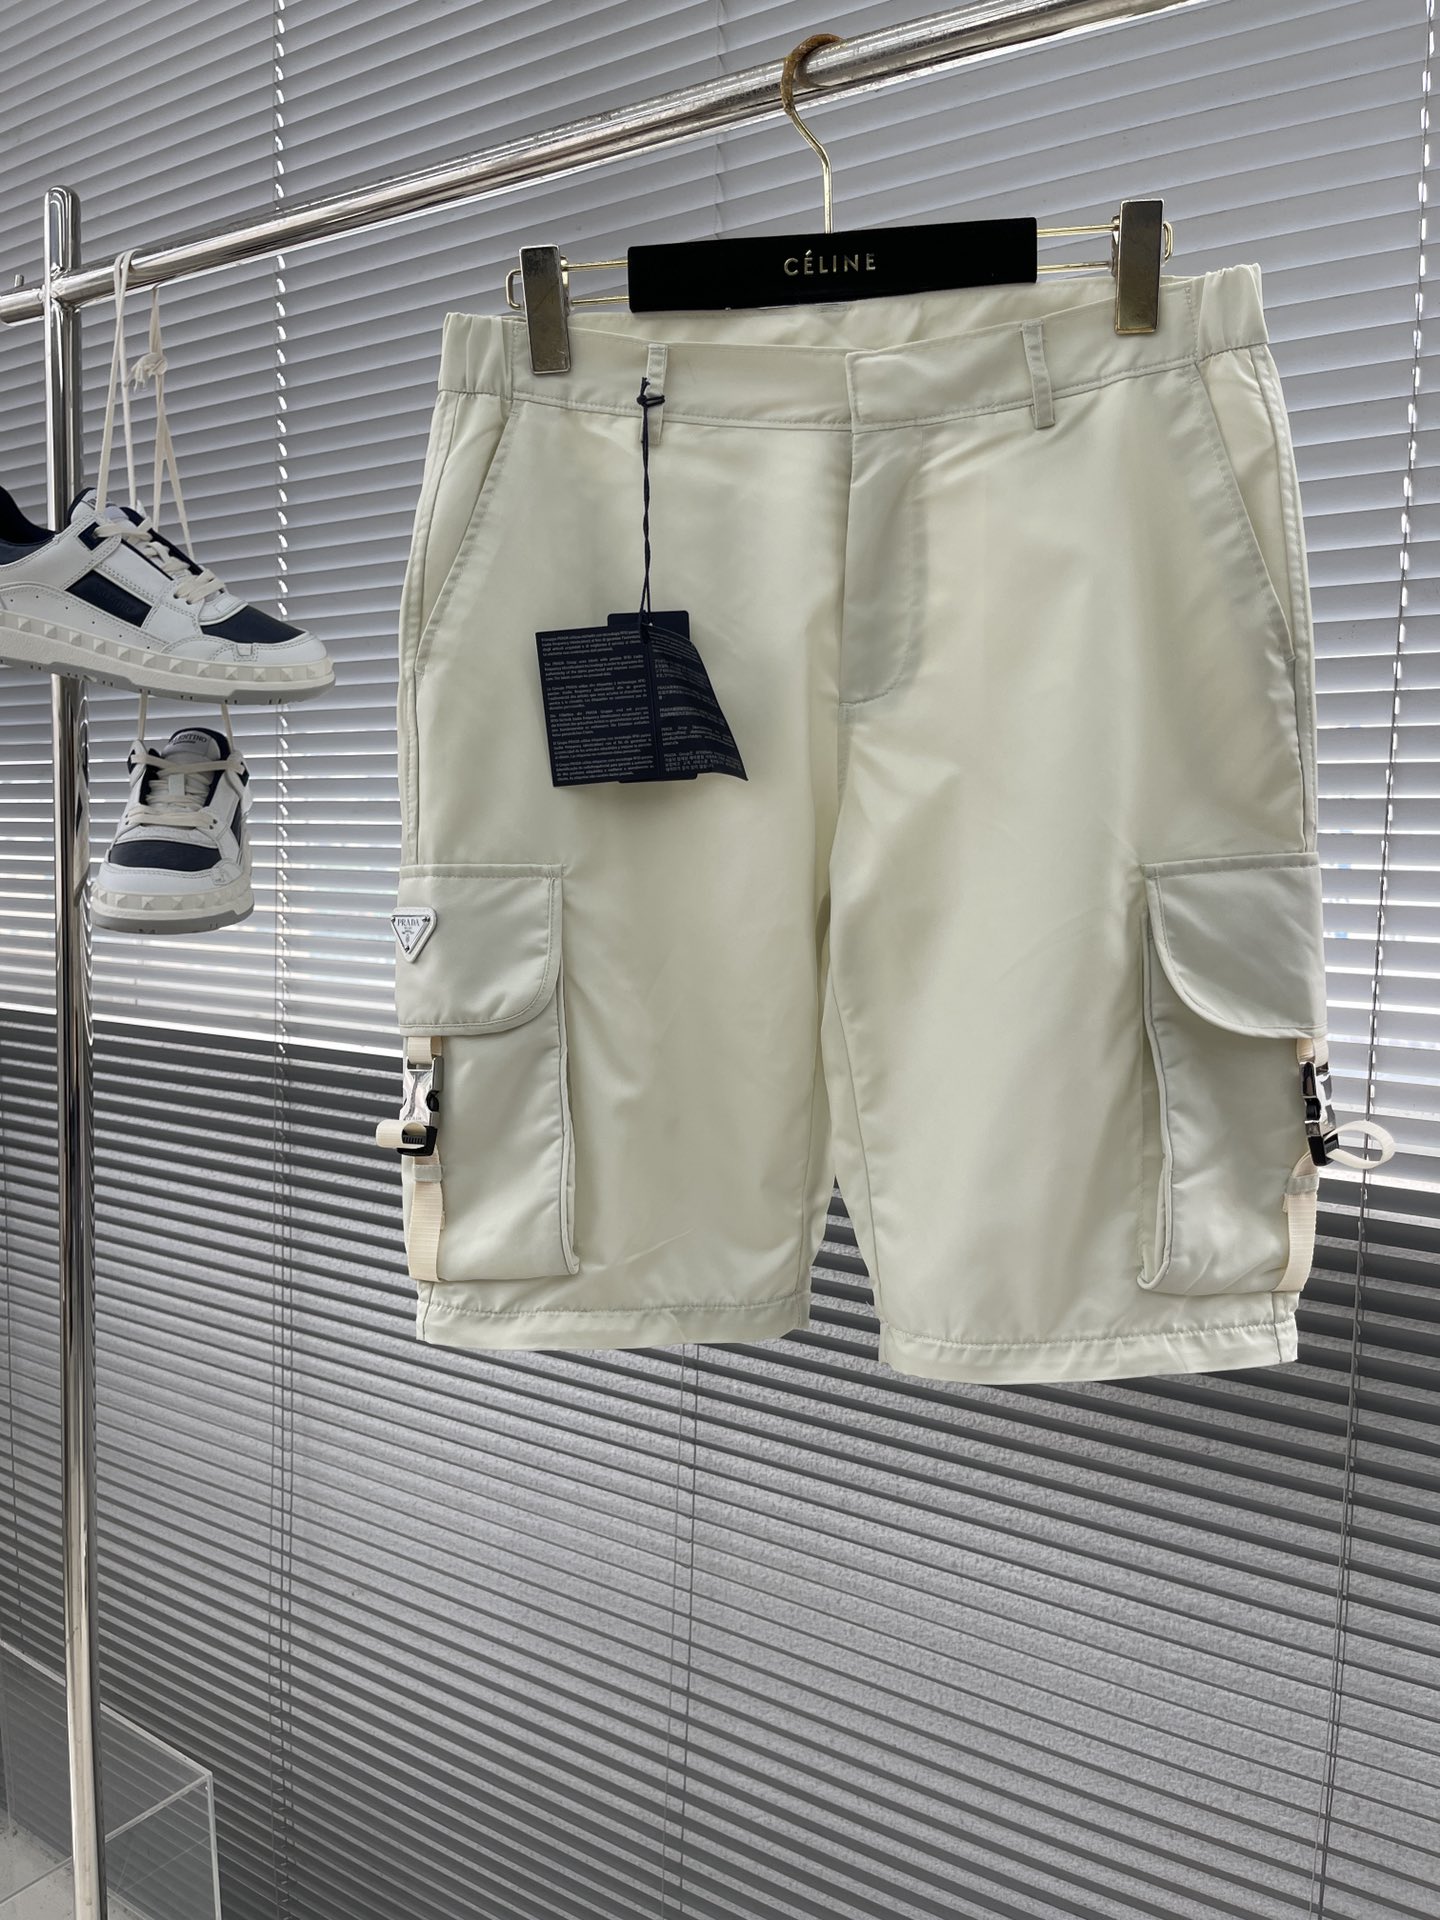 短裤zqdbz\n\n-PRAD 24SS夏季最新顶级短袖套装 原版定制面料 五金 时尚百搭 高端系列\n码数：sbed-56（M-3XL）